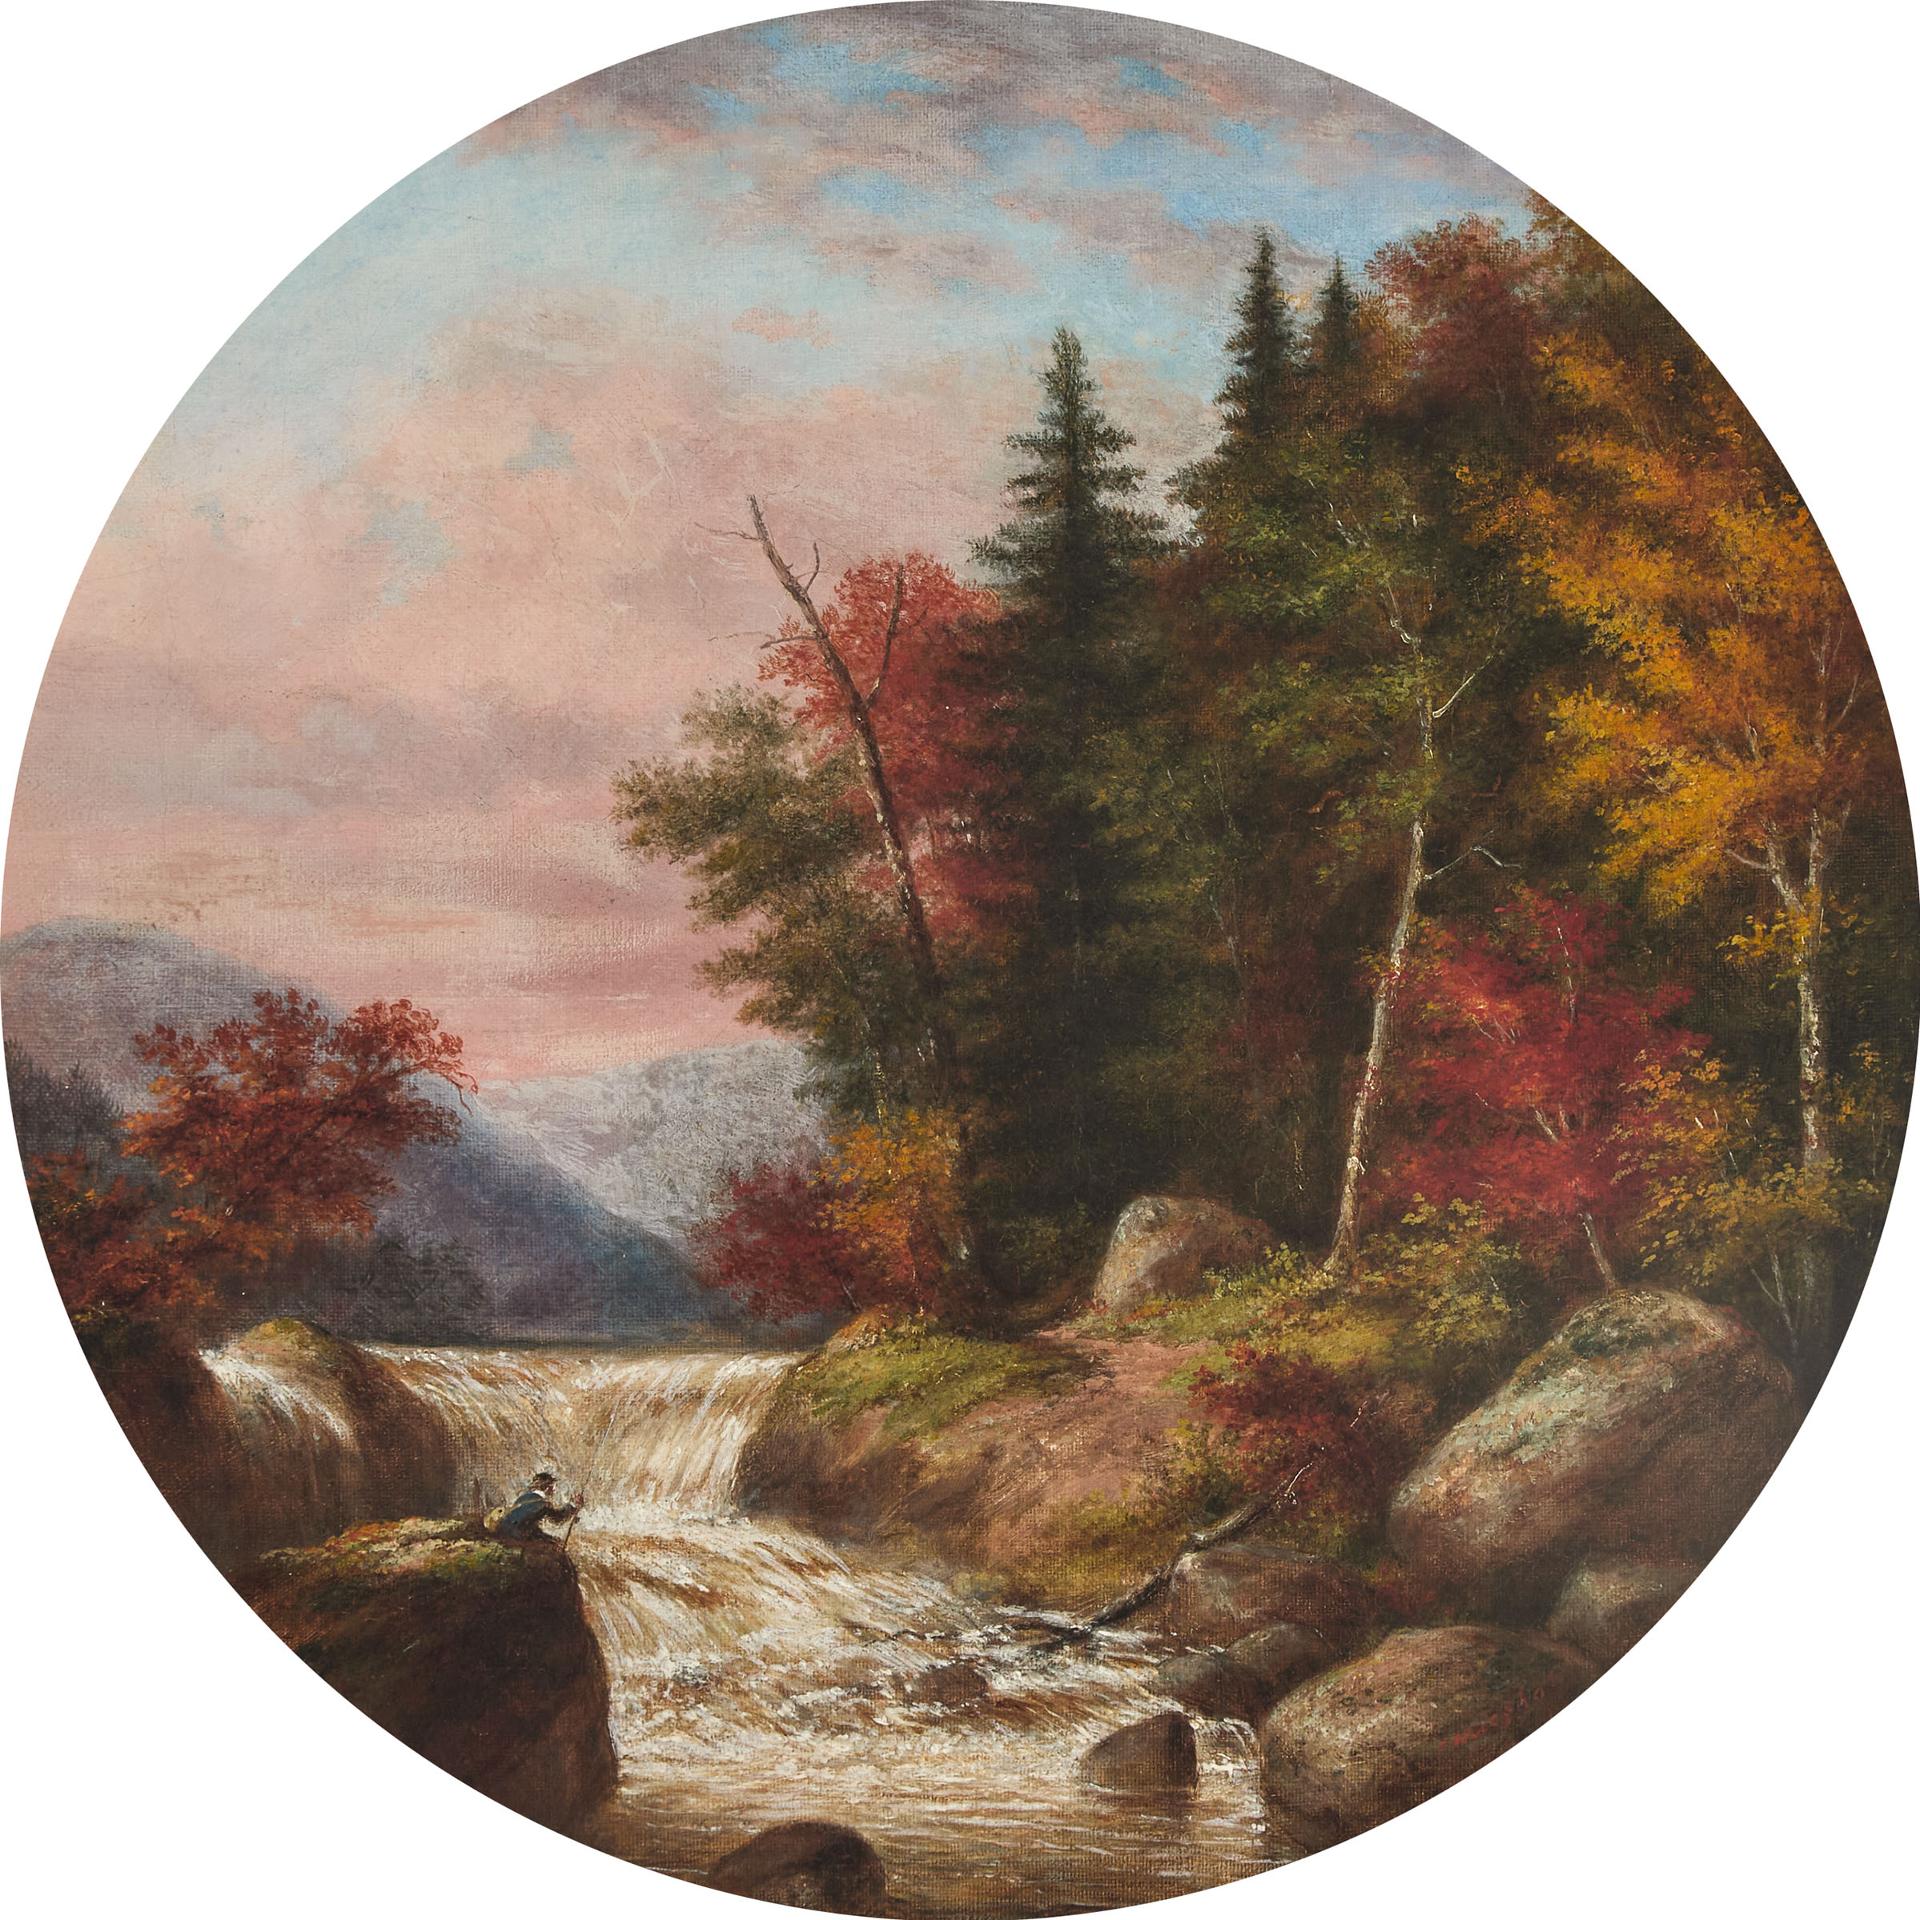 Cornelius David Krieghoff (1815-1872) - Fishing In The Rapids, Quebec